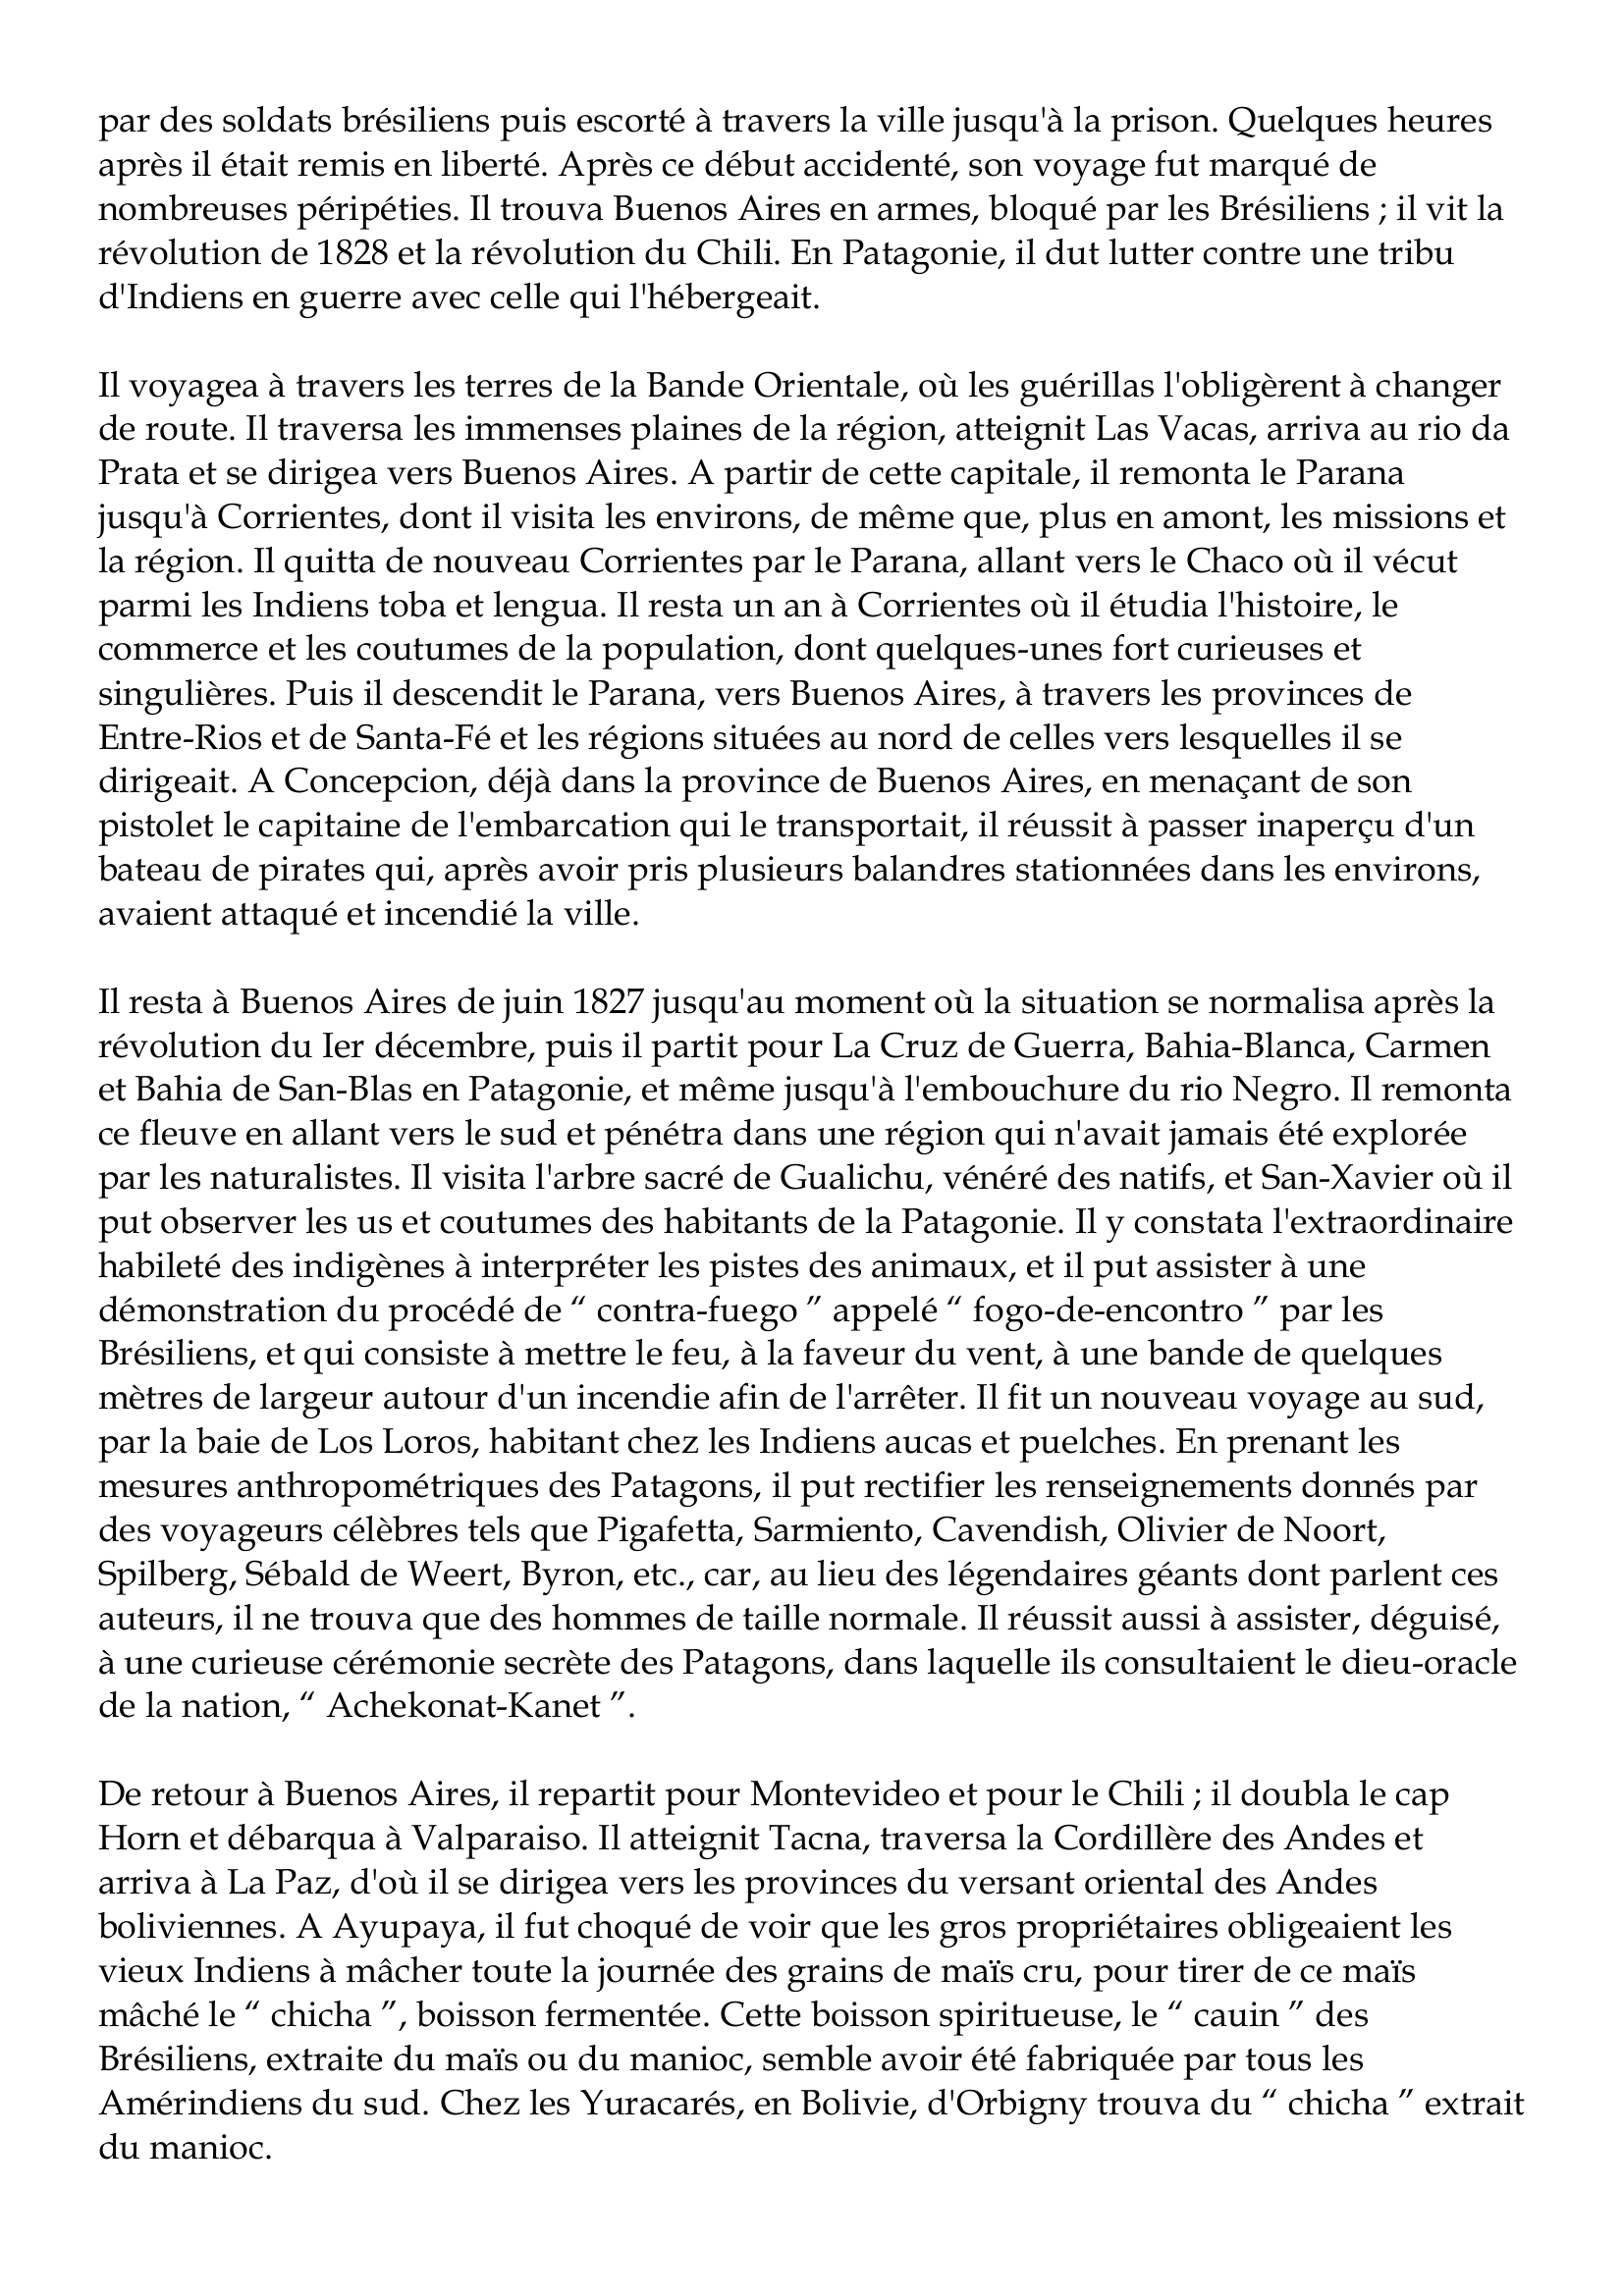 Prévisualisation du document Alcide d'Orbigny
1802-1857
Alcide Dessalines d'Orbigny est né à Couéron (Loire-Inférieure) le 6 septembre 1802, et
mort à Pierrefitte, près de Saint-Denis (Seine) le 30 juin 1857.